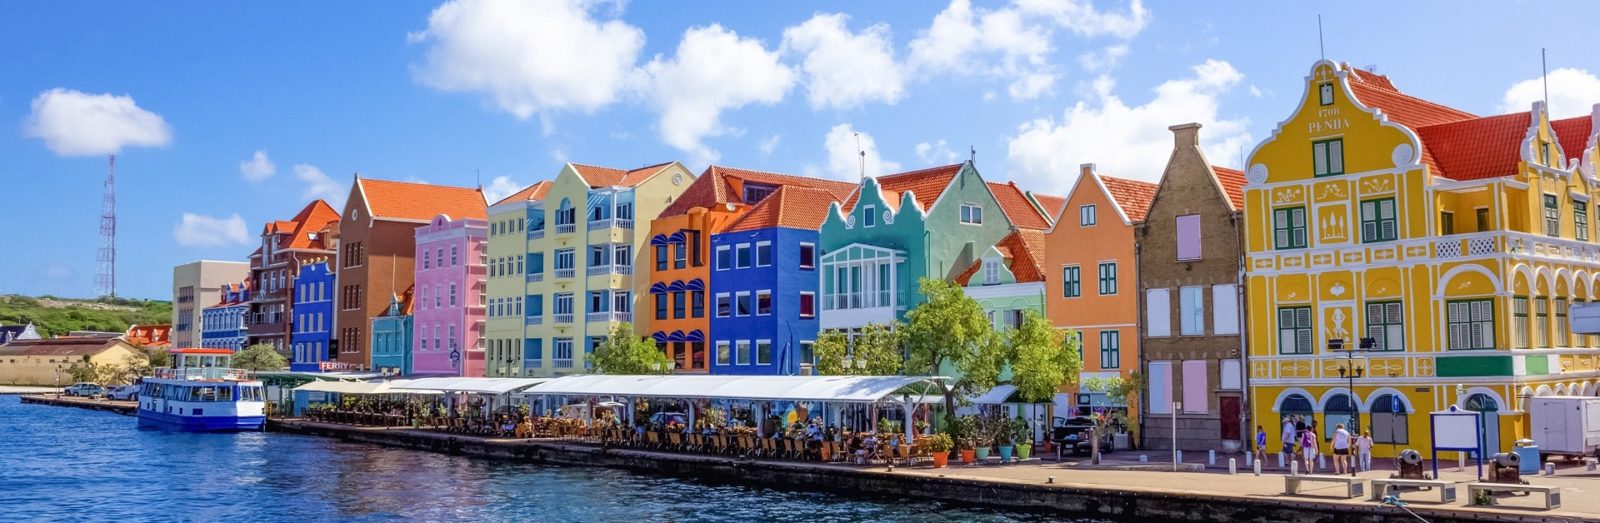 Landausflüge in Willemstad (Curaçao)